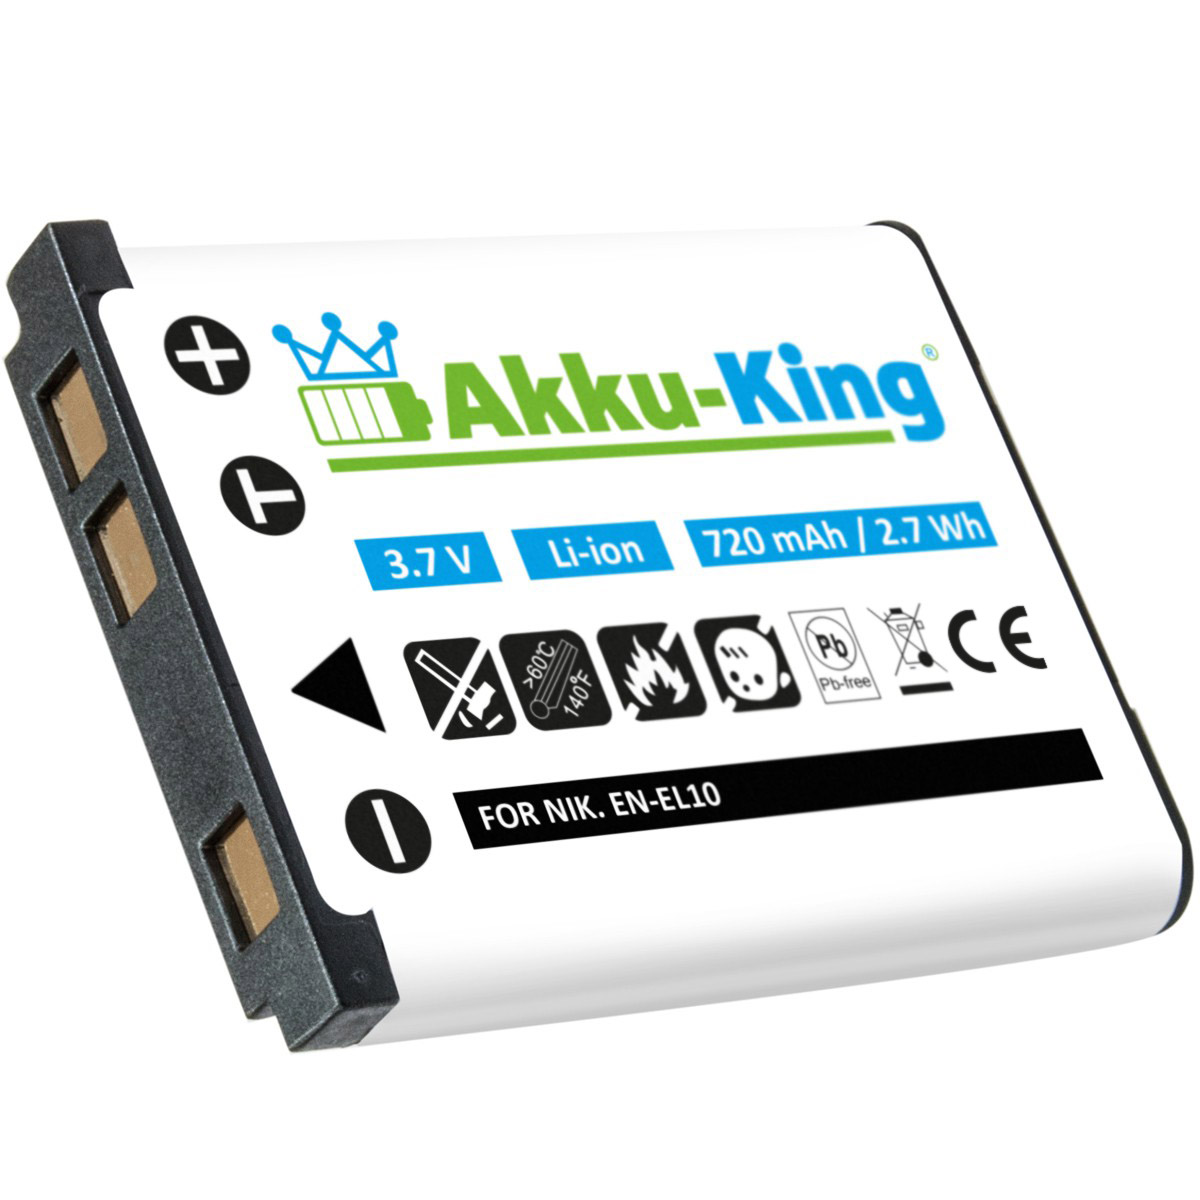 Kamera-Akku, mit 720mAh Olympus kompatibel 3.7 Li-40B Li-Ion Akku Volt, AKKU-KING